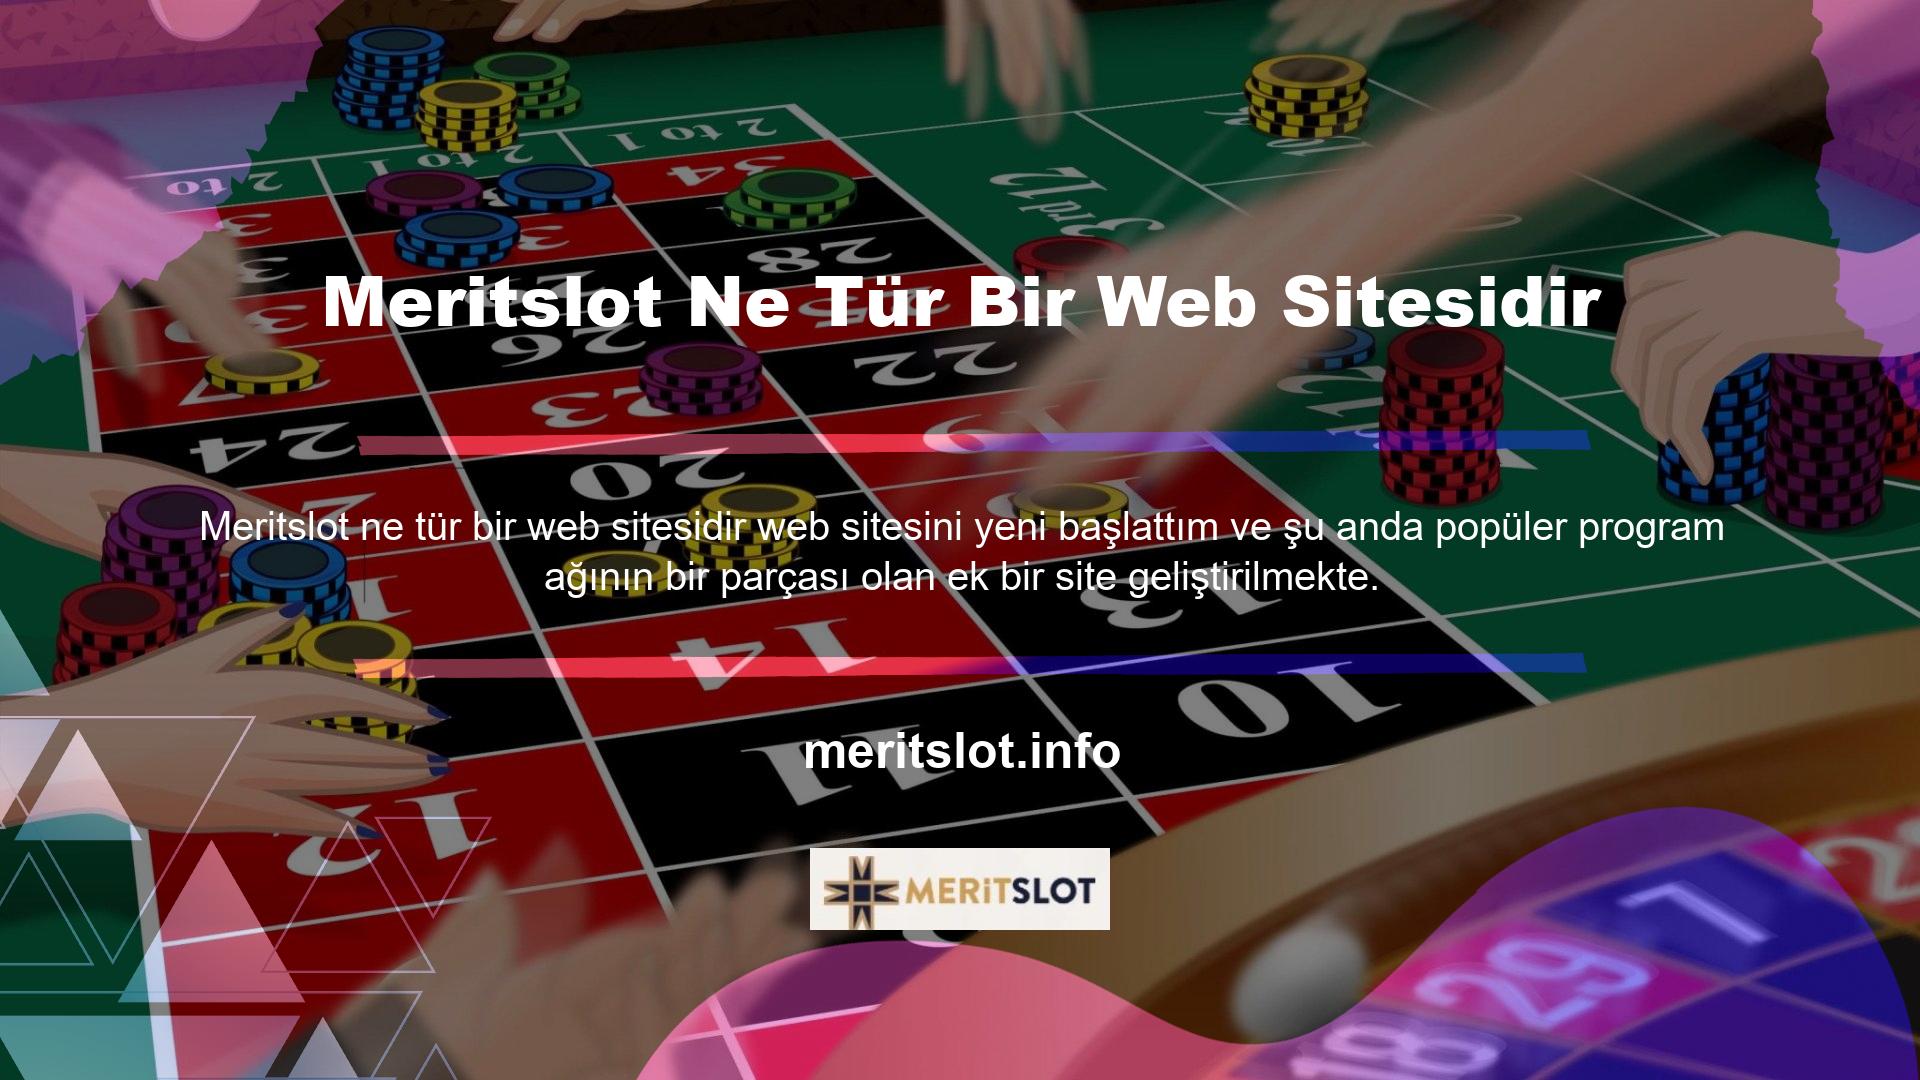 Peki Meritslot nasıl bir web sitesi? Oyuncular, oyun seçimleri ve dahili promosyonların yanı sıra ödeme teknolojisi de dahil olmak üzere sitedeki çok çeşitli özelliklere erişebilirler